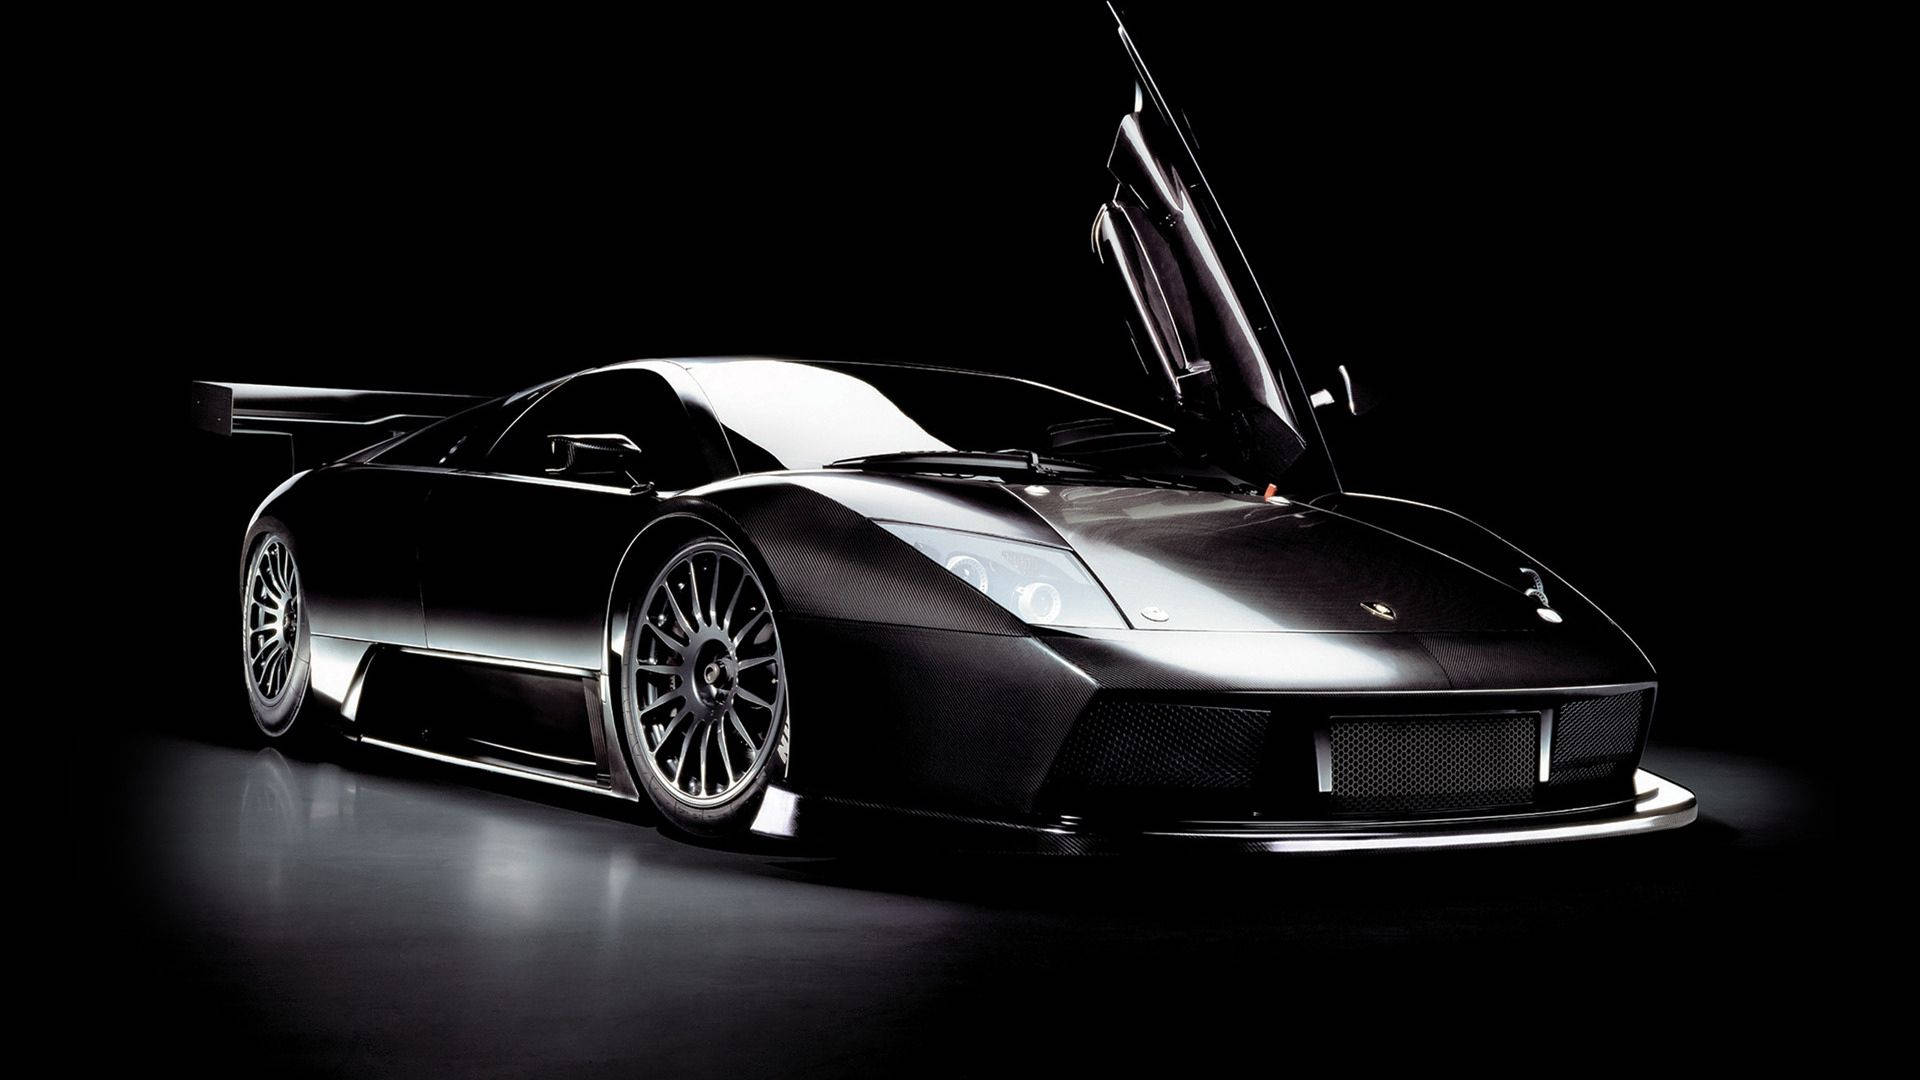 Stunning Black Lamborghini Gallardo Car